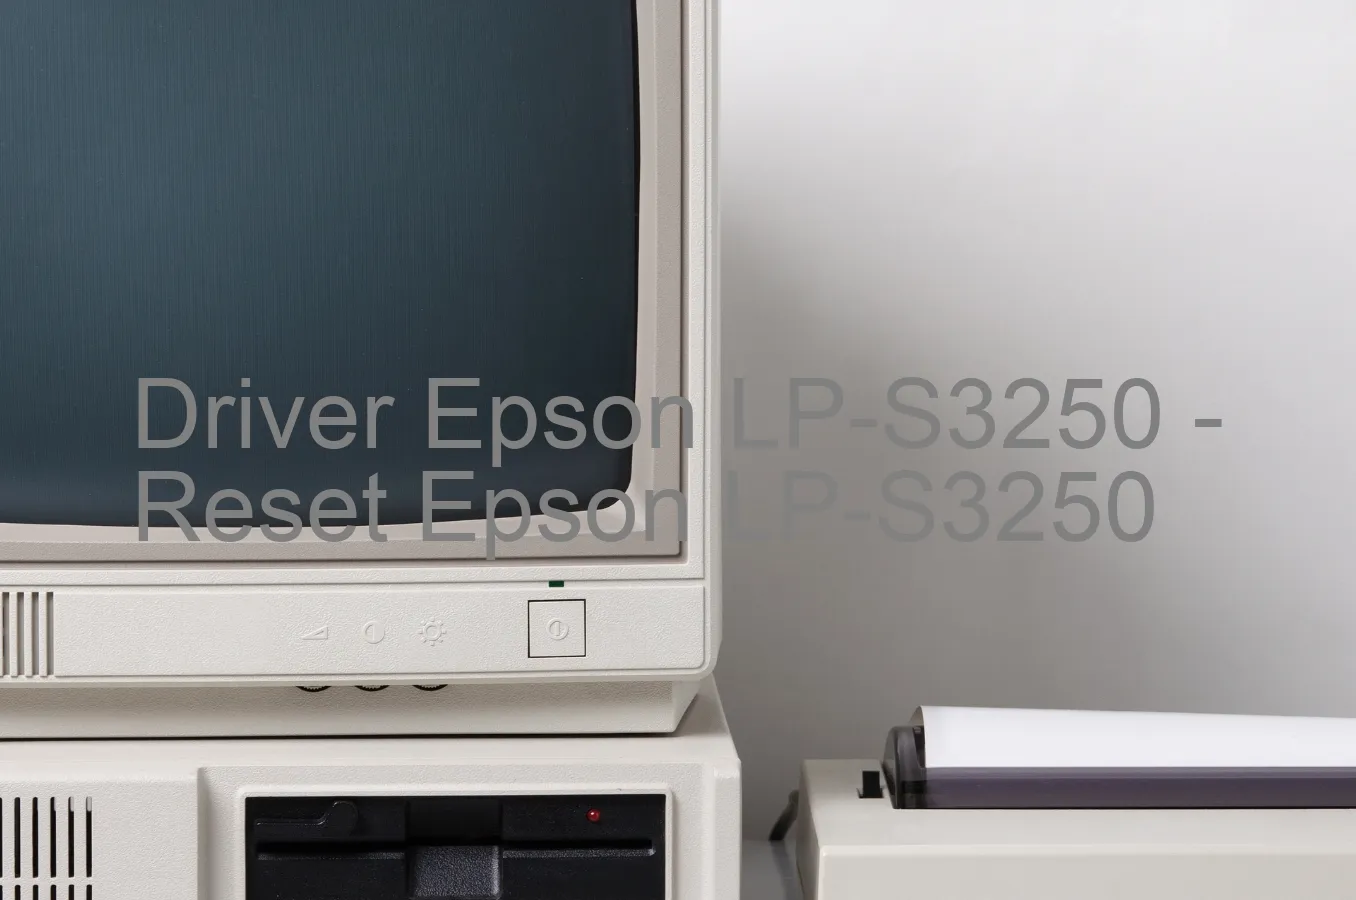 Epson LP-S3250のドライバー、Epson LP-S3250のリセットソフトウェア